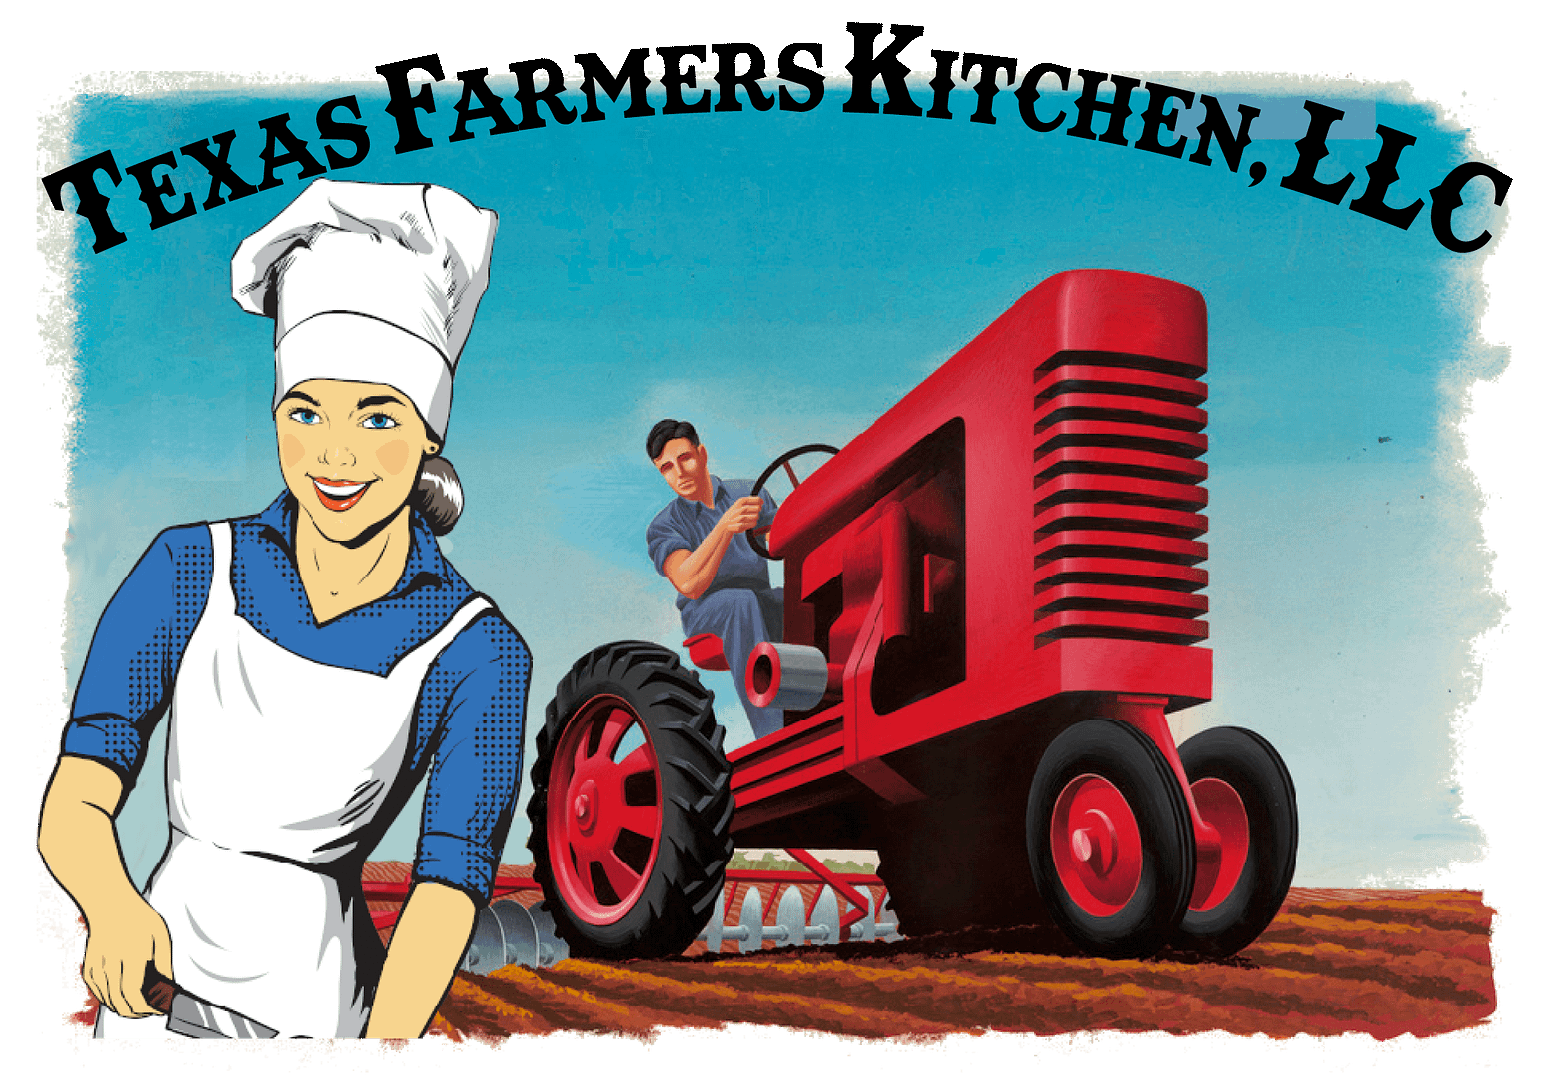 texas farmers kitchen logo image